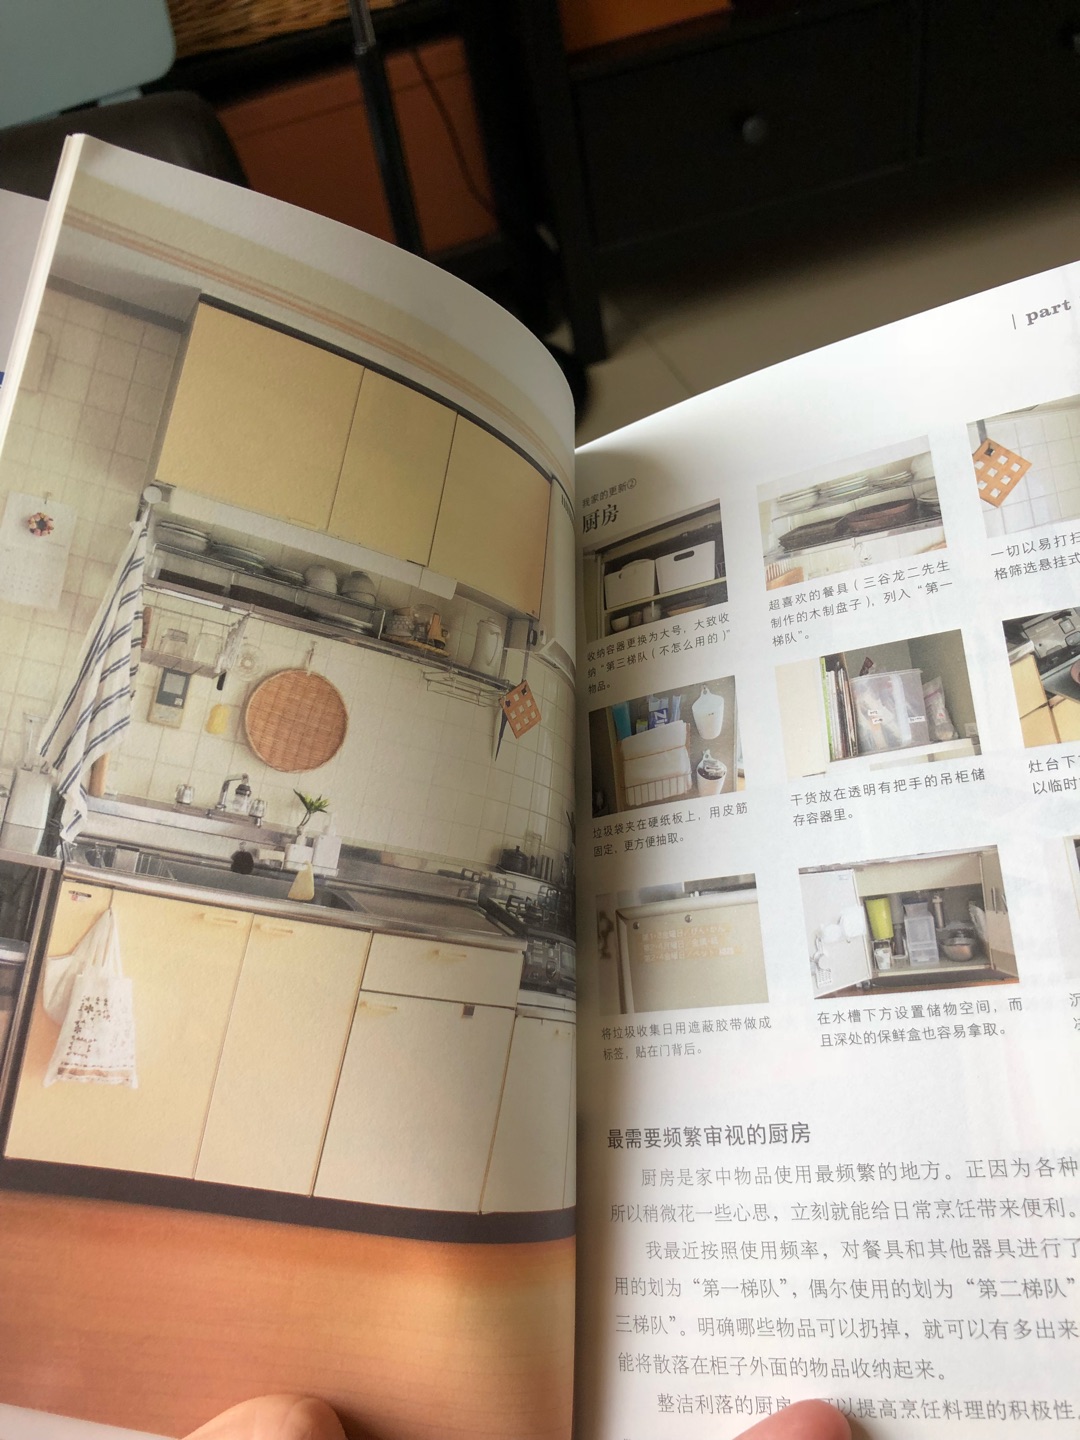 日本人写的收纳整理的书都挺不错，看起来就想把家里好好收拾的冲动，干净整洁的家谁不喜欢，全彩页，介绍很详细，好好学习吧！